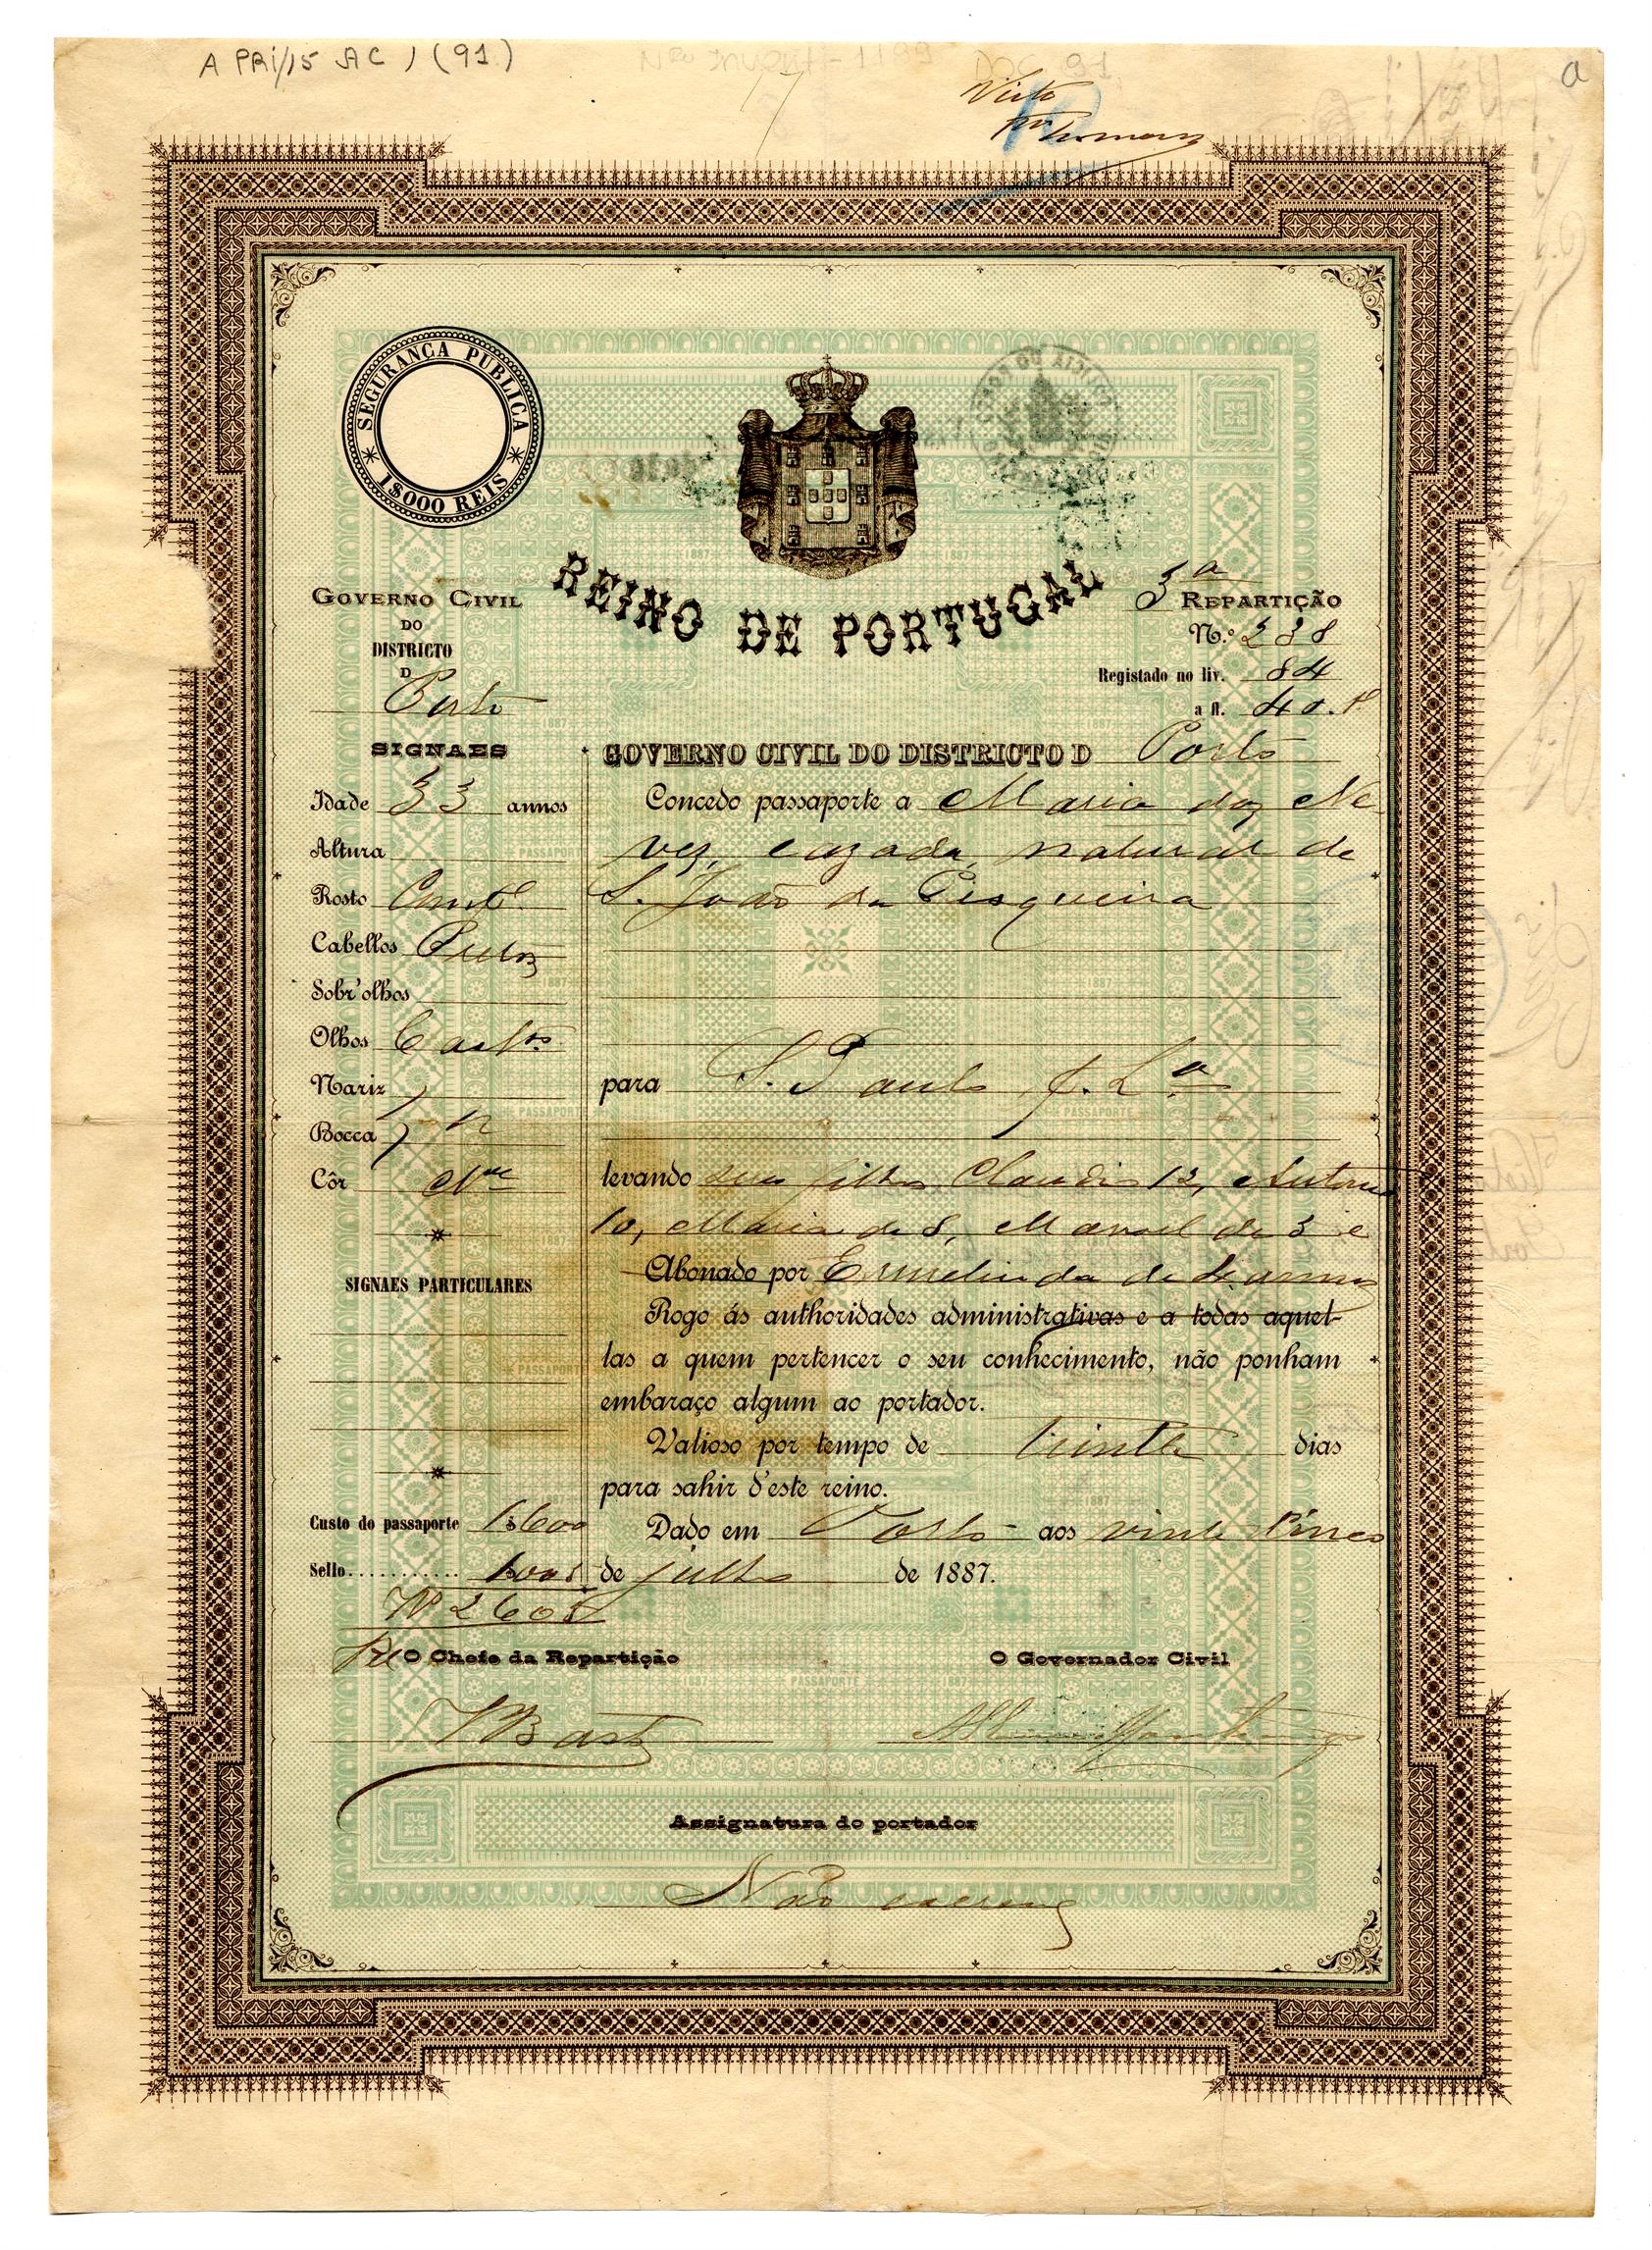 Passaporte de Maria das Neves